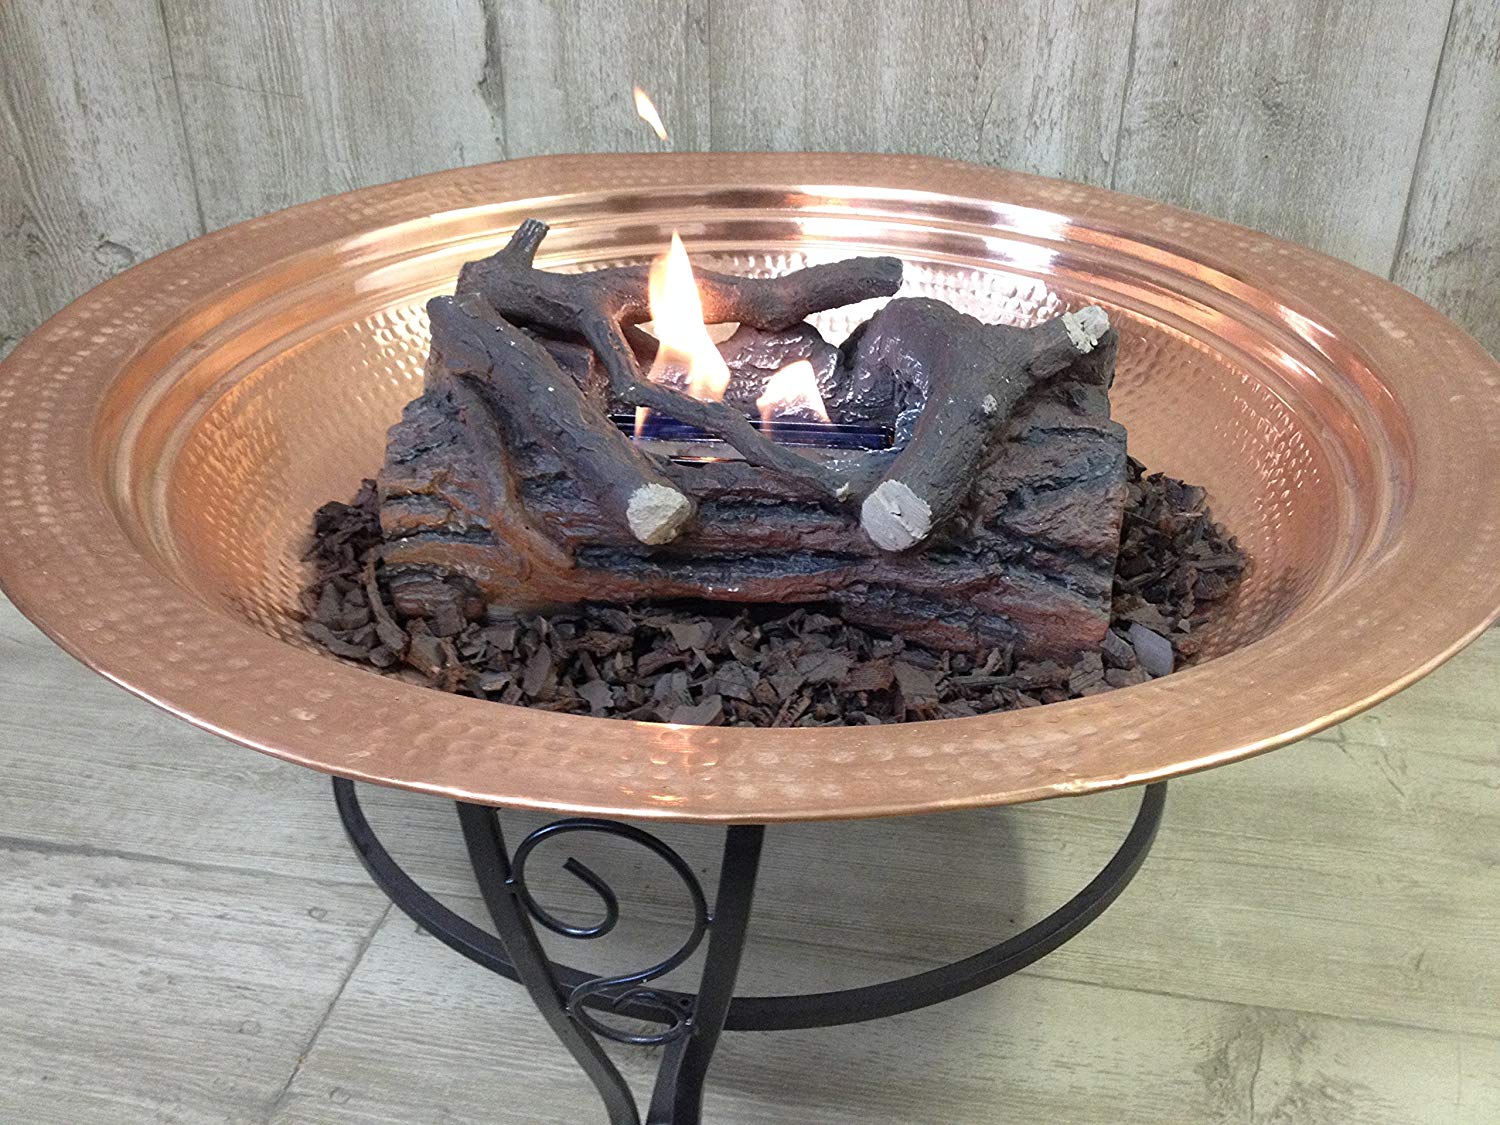 Endless Summer Outdoor Fireplace Inspirational Pomegranate solutions Oak Gel Fuel Outdoor Log Set